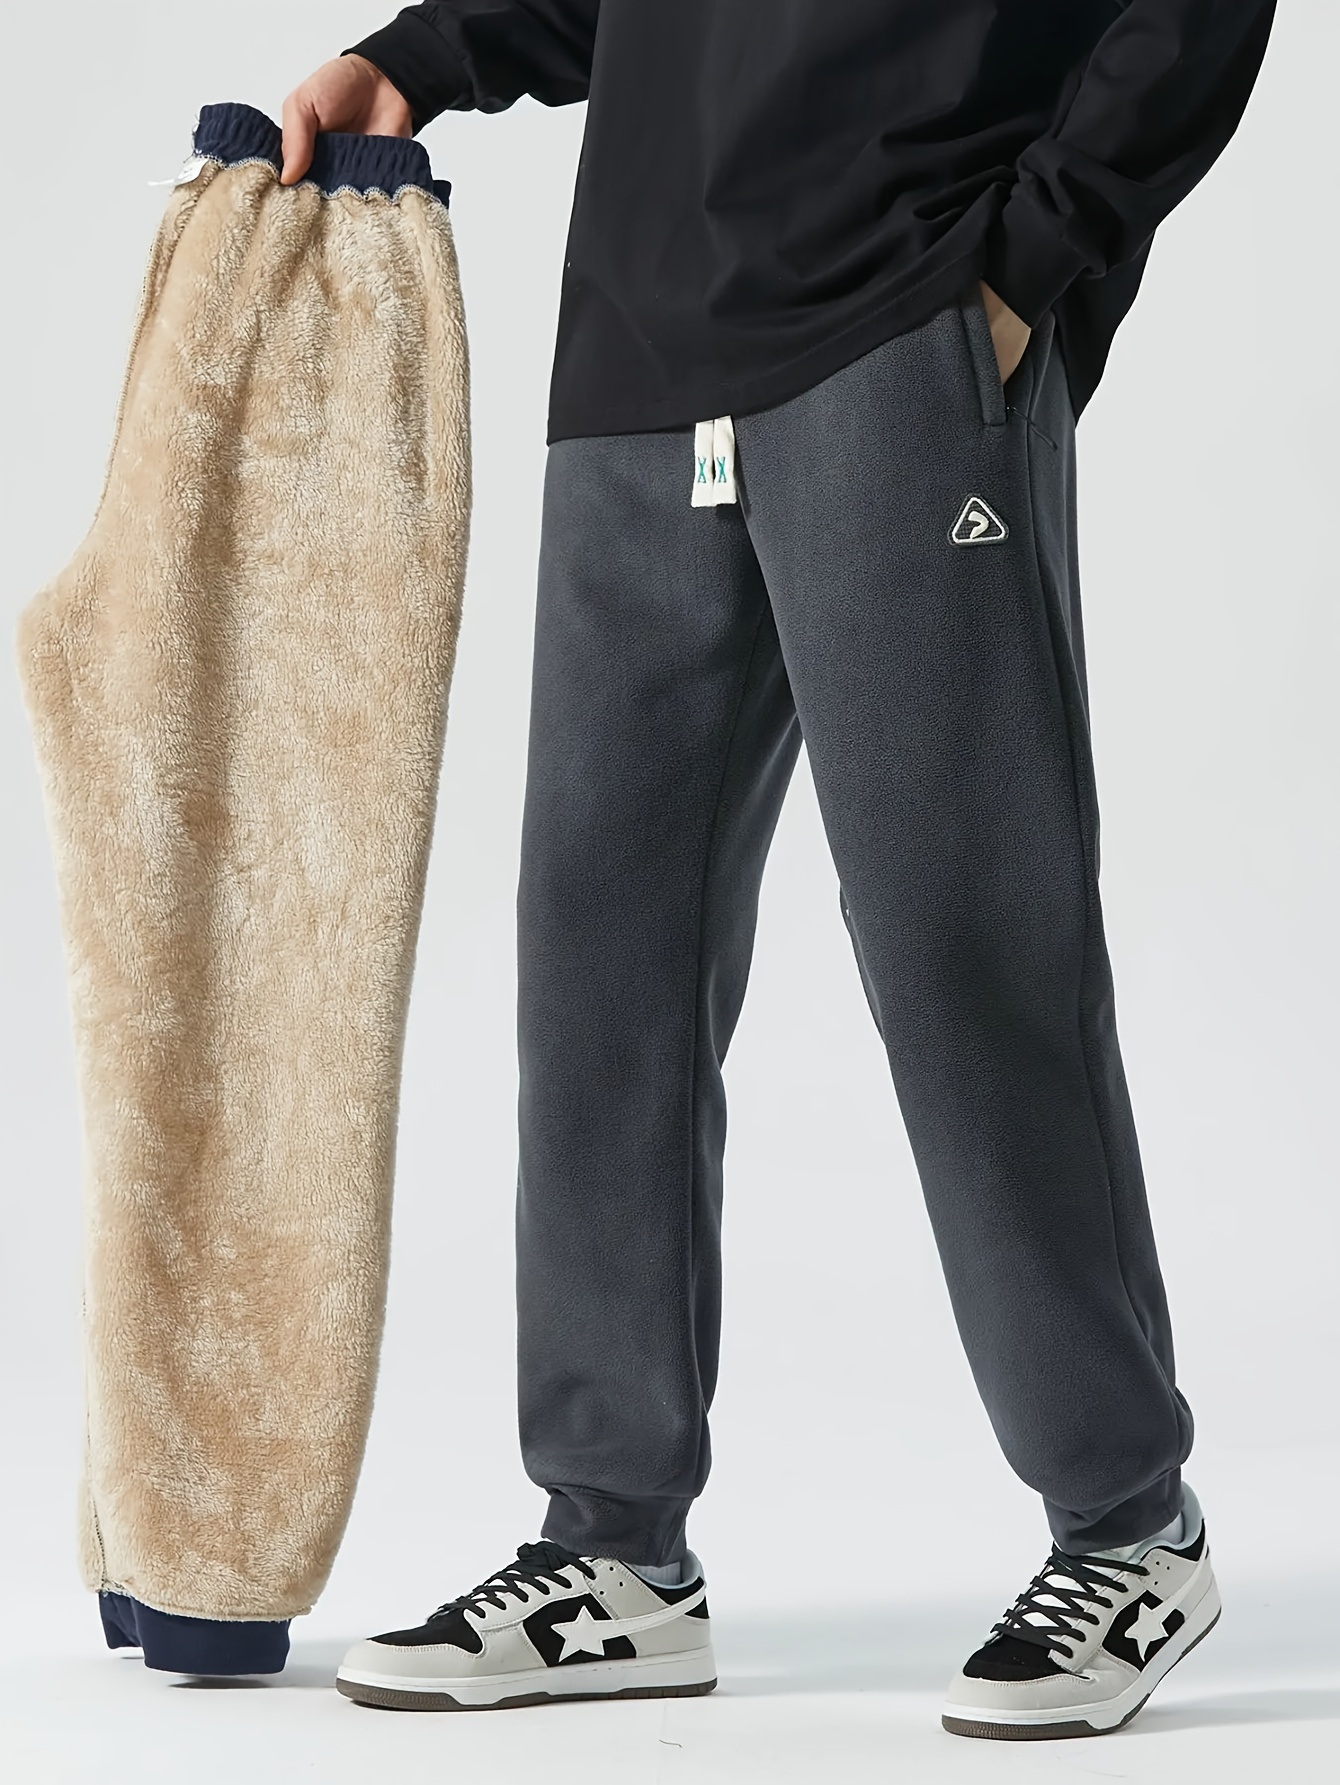 Pantalones de caza cálidos hombre Polar Lined Camo CE - Ducatillon Talla  ropa 46